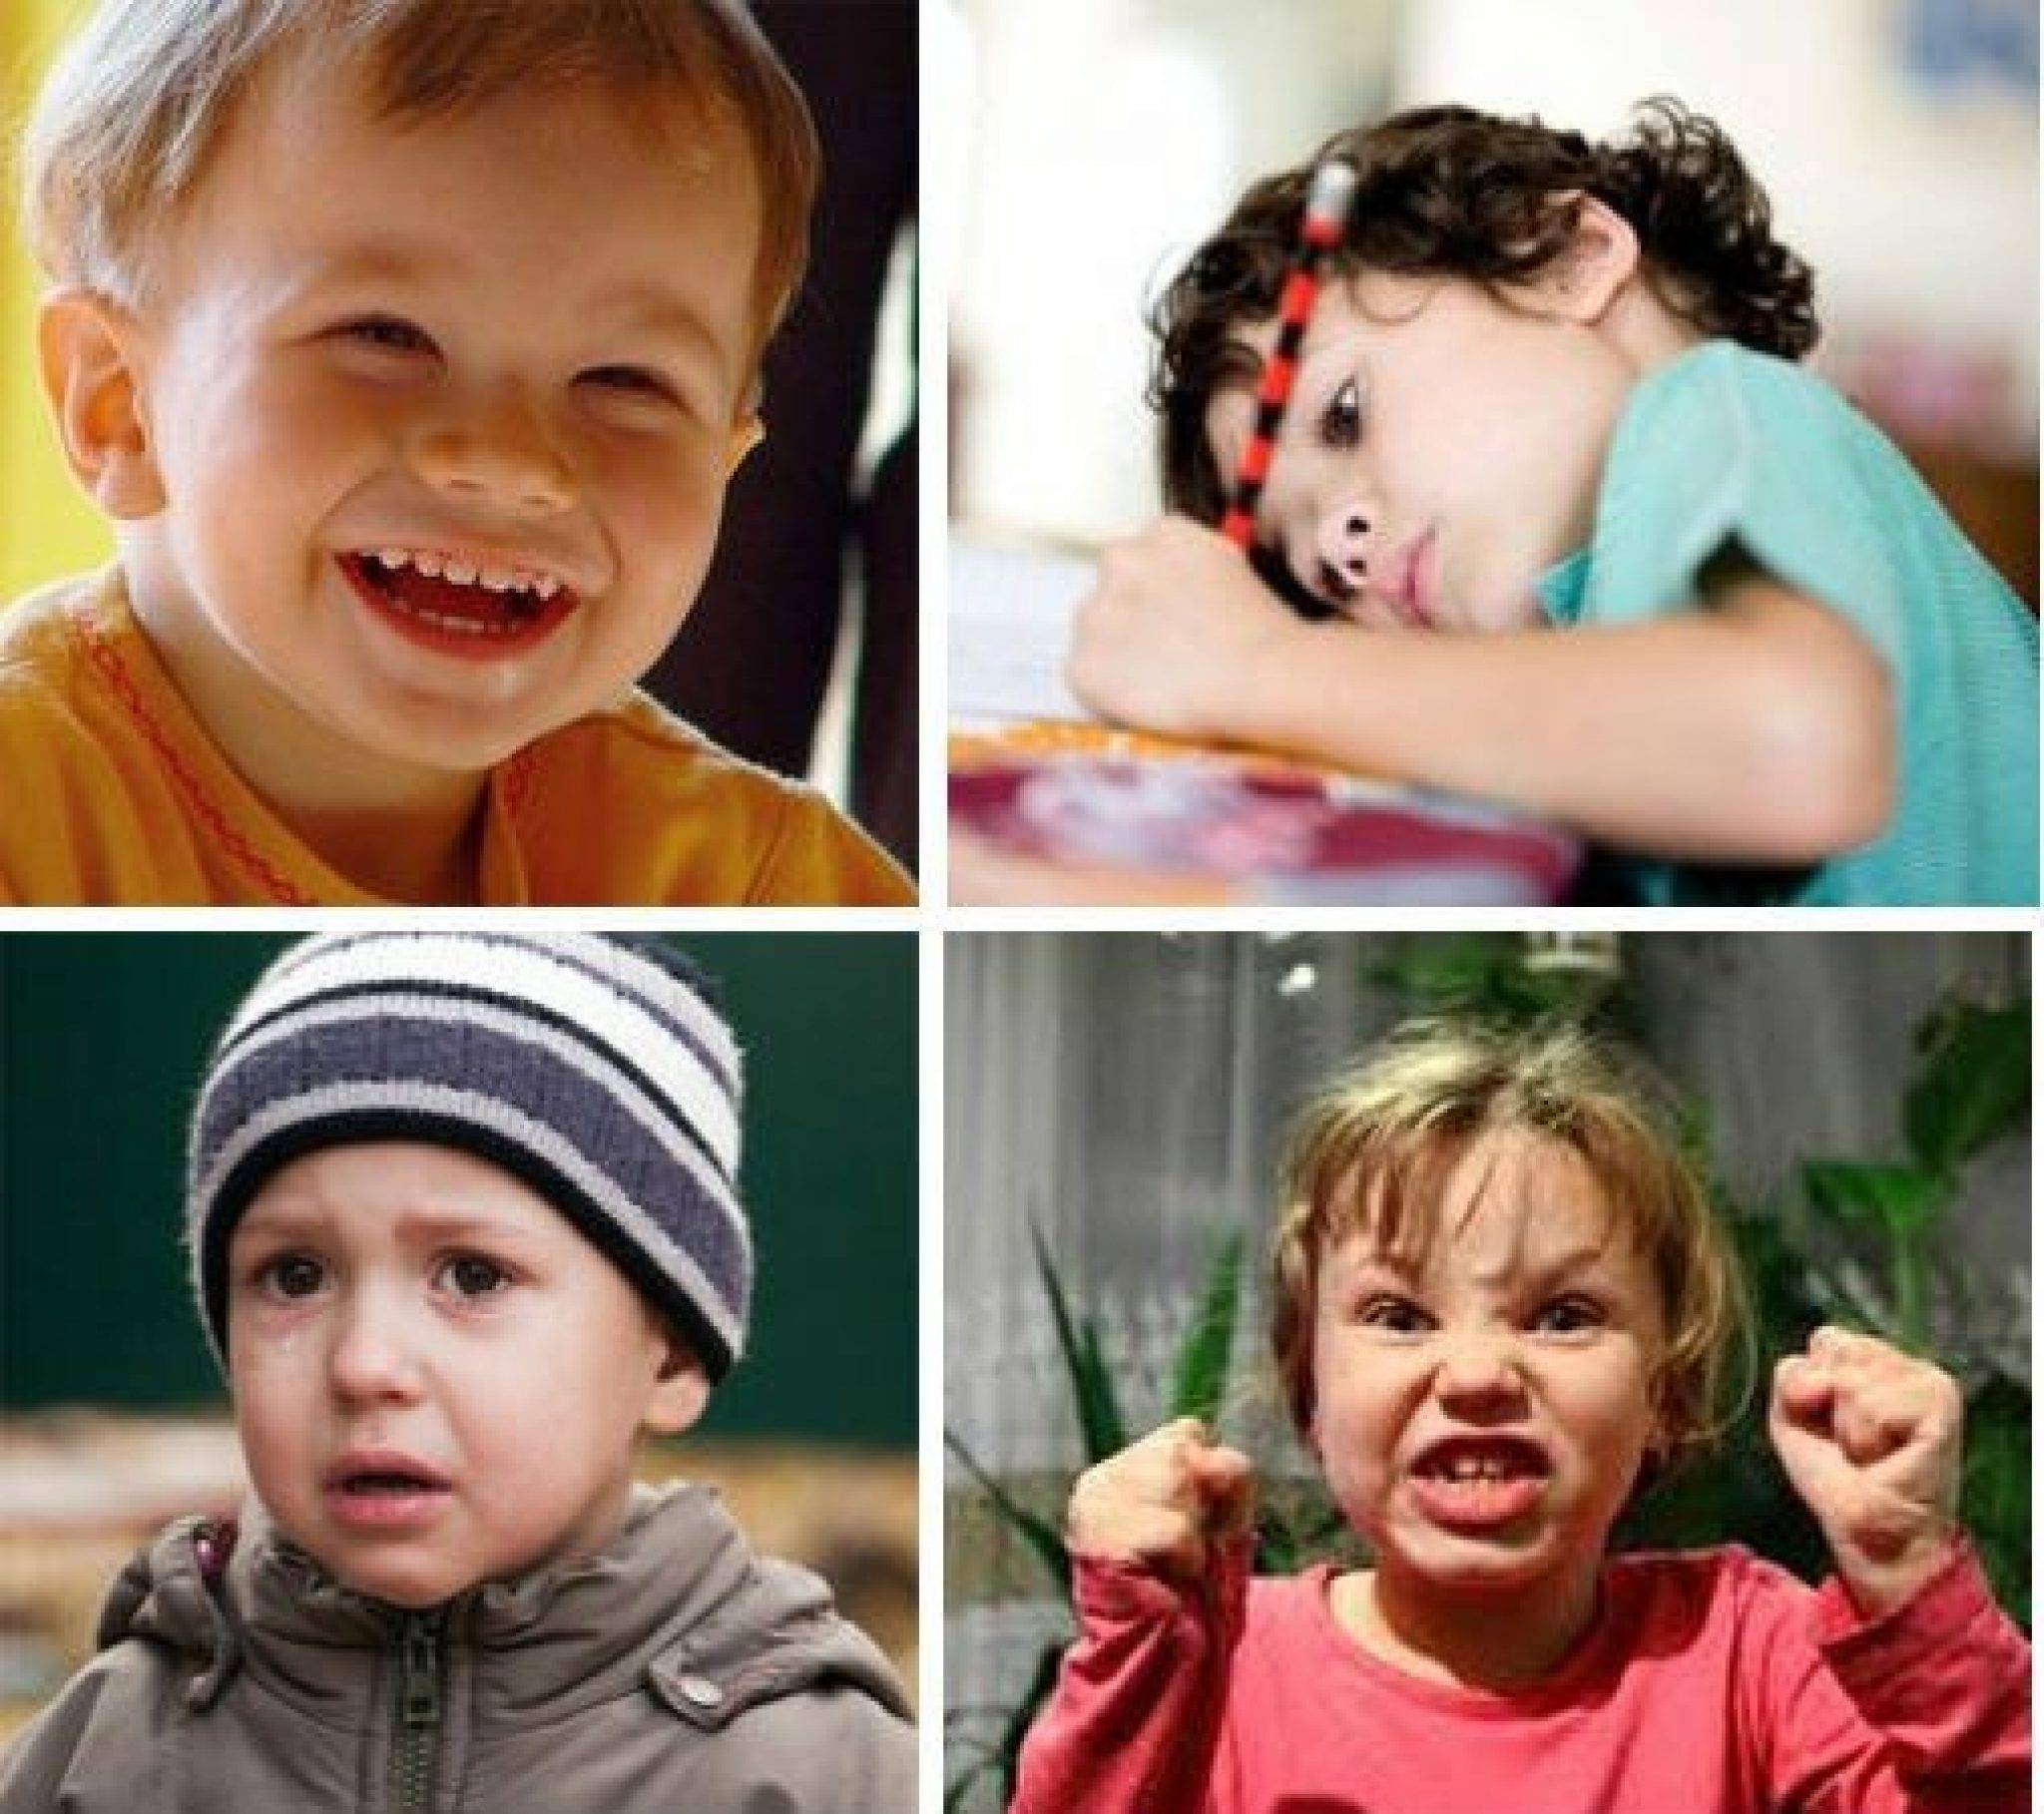 Особенности воспитания ребенка с учетом его темперамента. ребенок сангвиник, холерик, флегматик, меланхолик